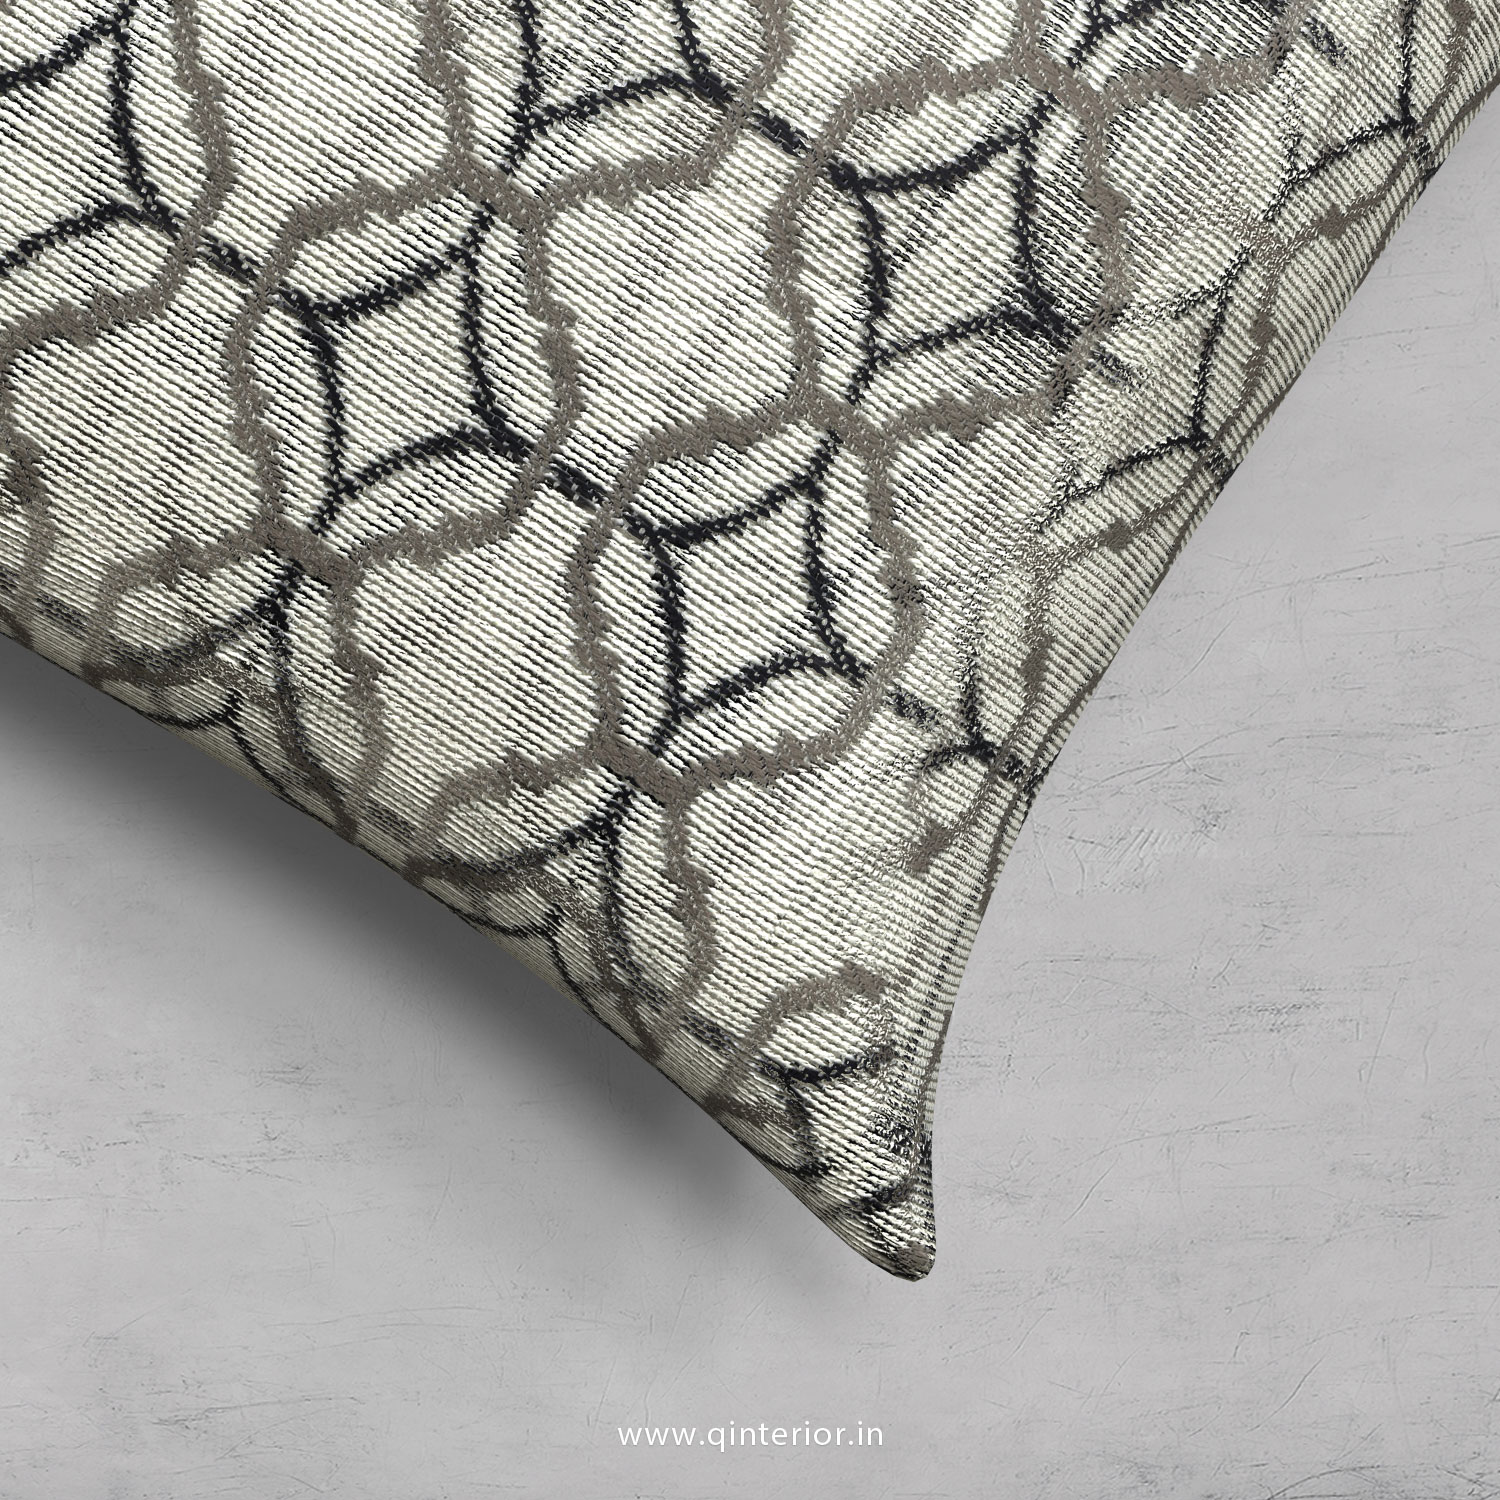 Grey Jaquard Cushion With Cushion Cover - CUS001 JQ